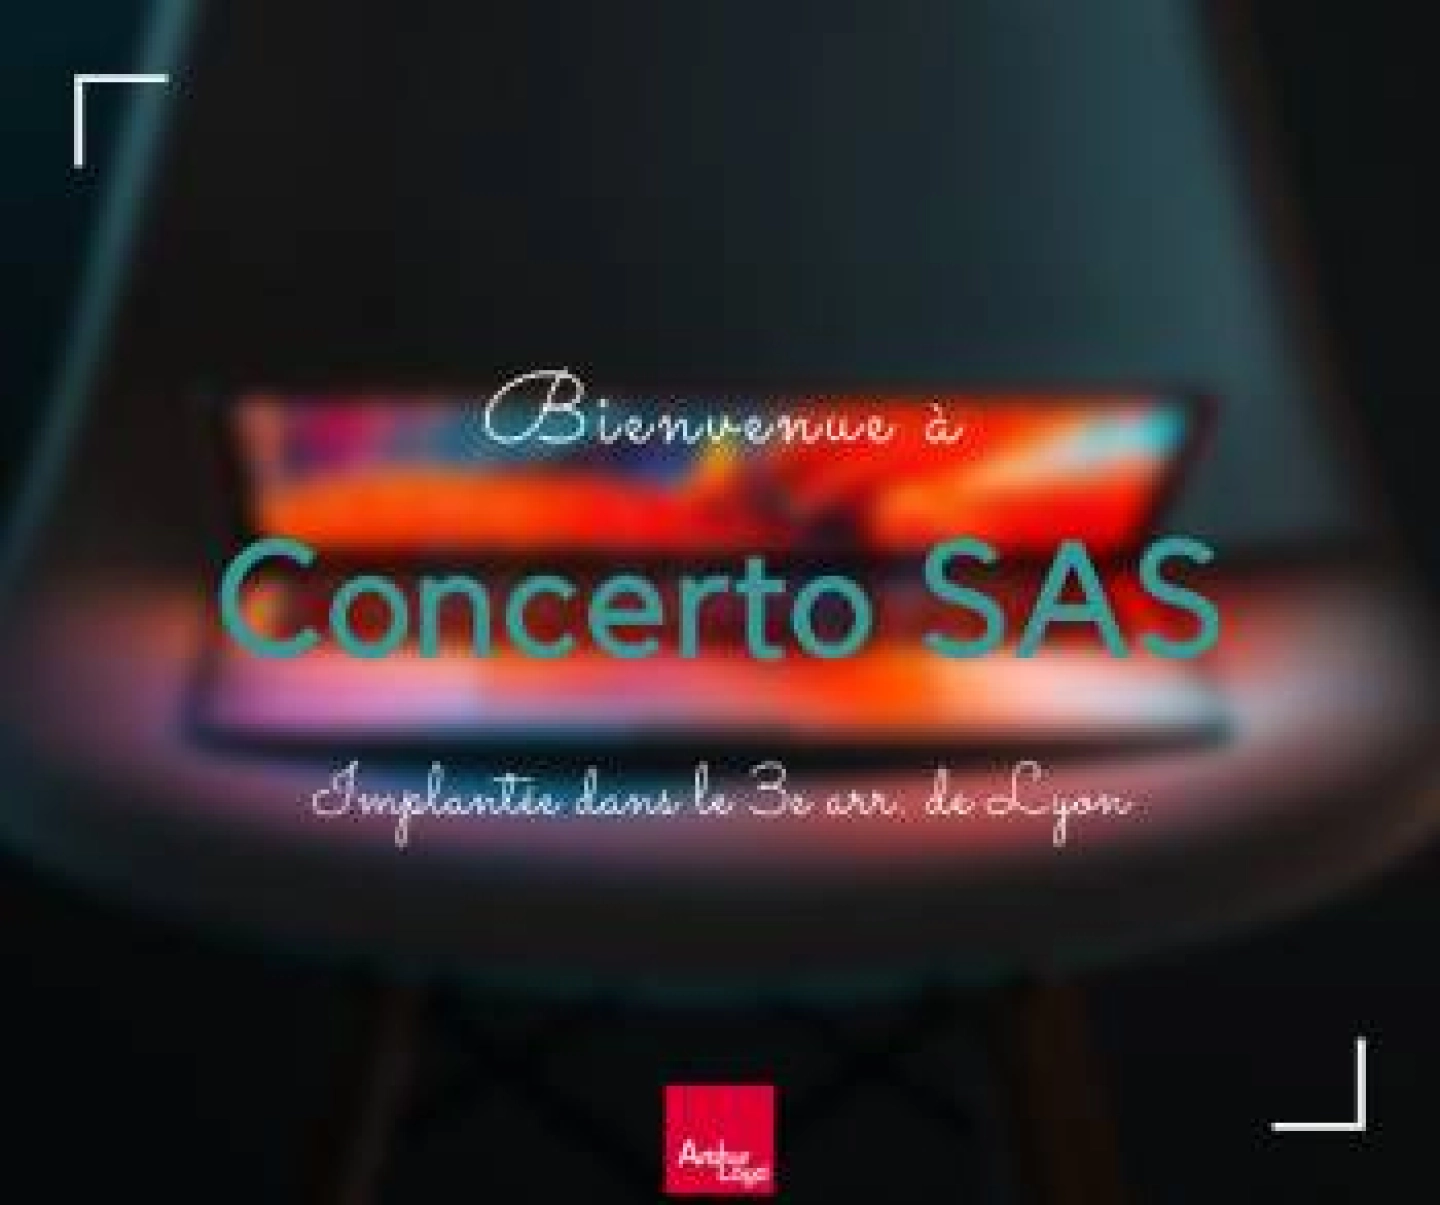 Illustration de l'implantation de la société Concerto SAS